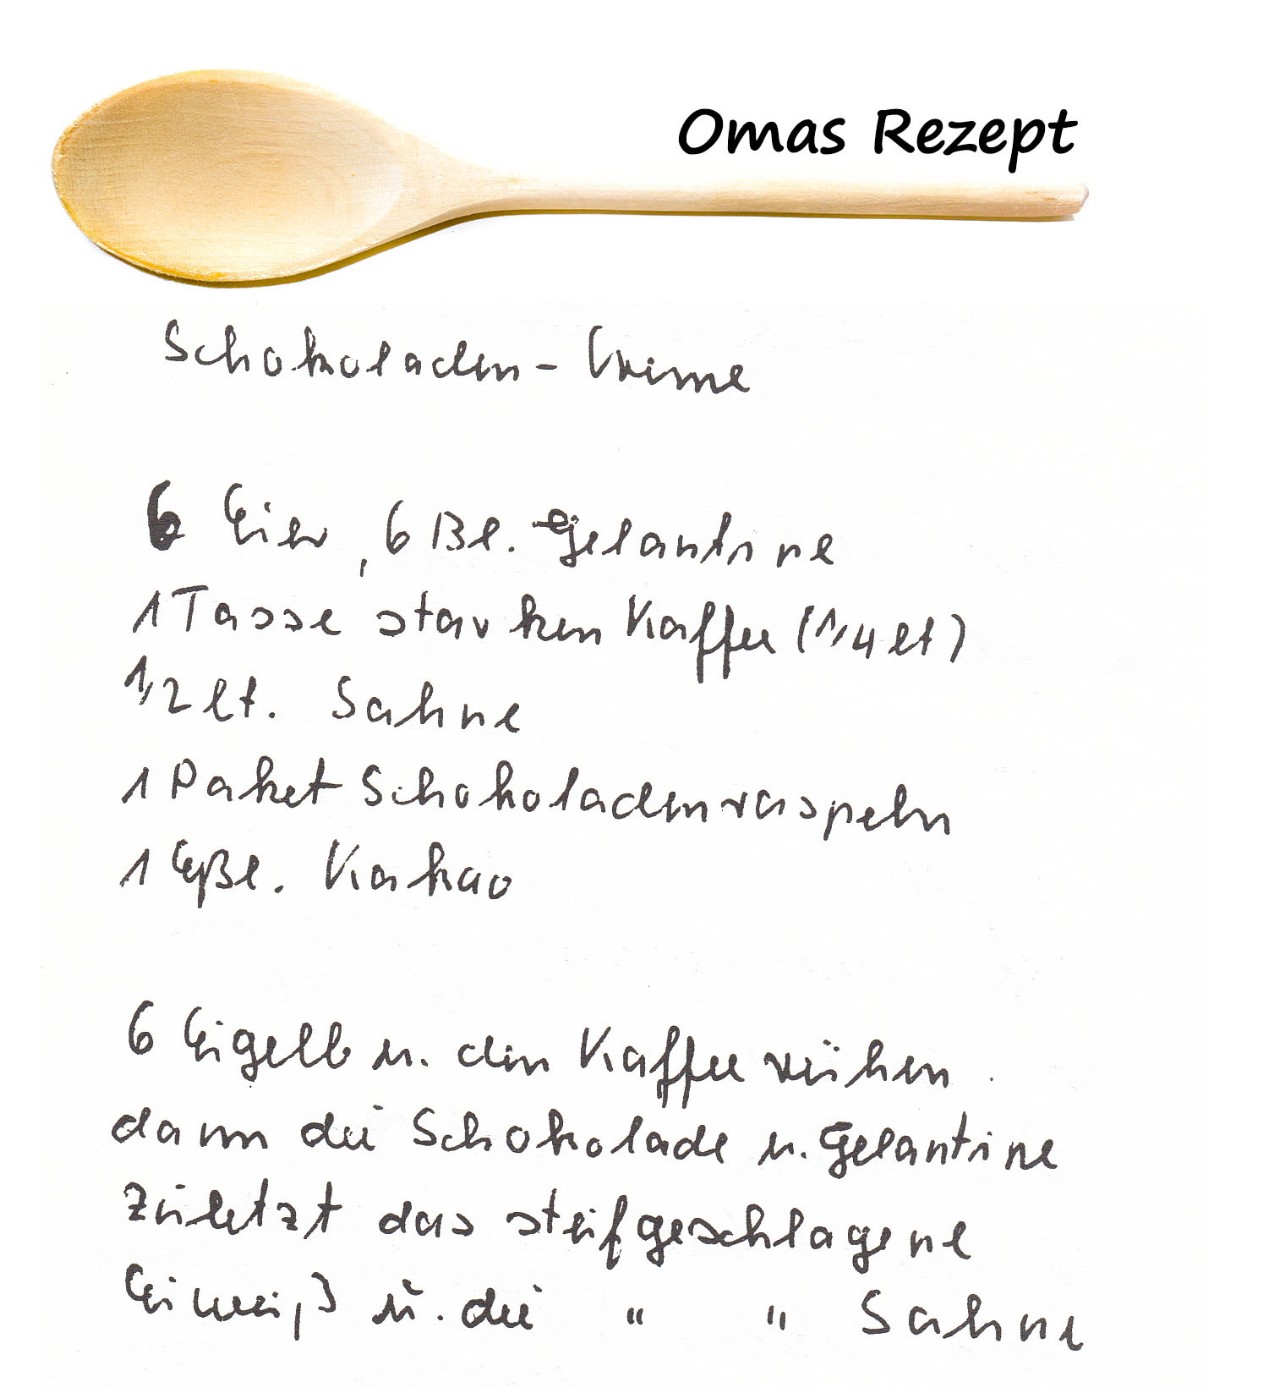 Omas Kochbuch, Desserts und Süßspeisen - Schokoladencreme